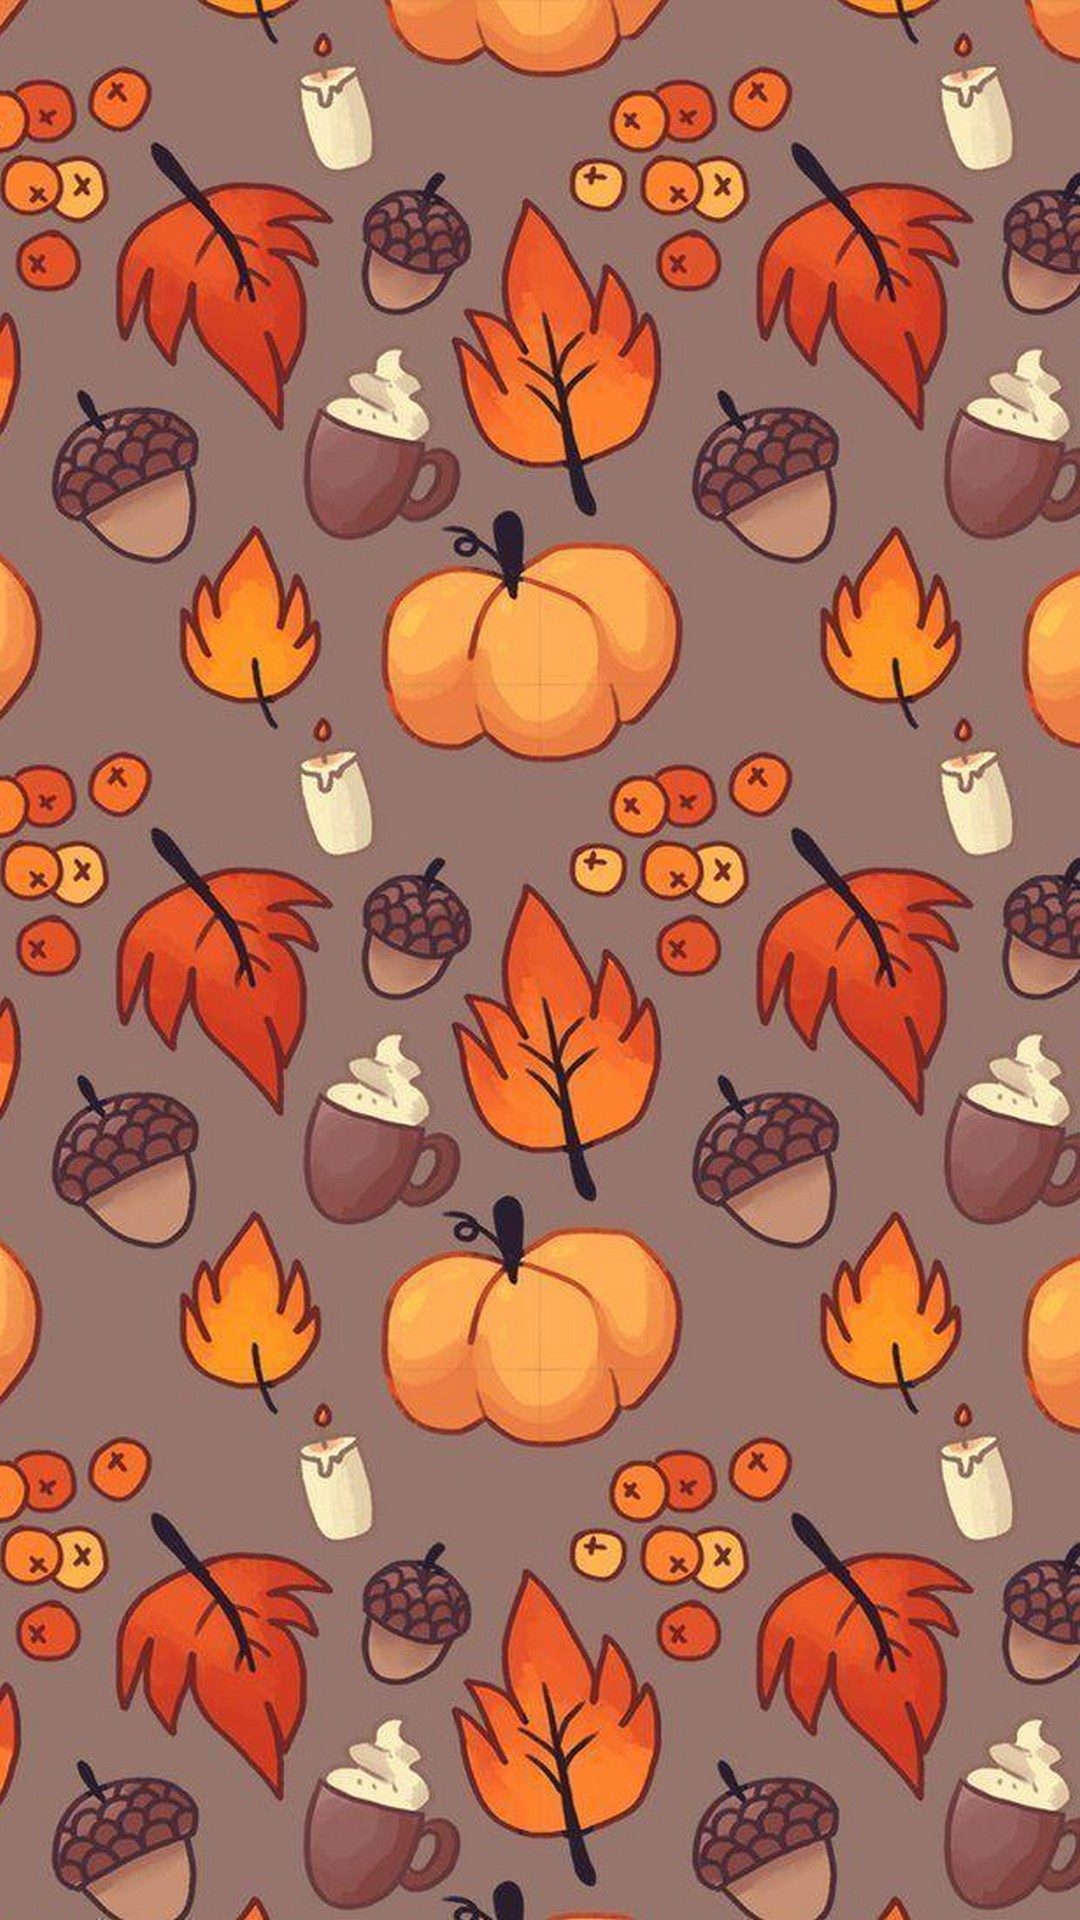 Aesthetic Halloween Ipad Wallpapers